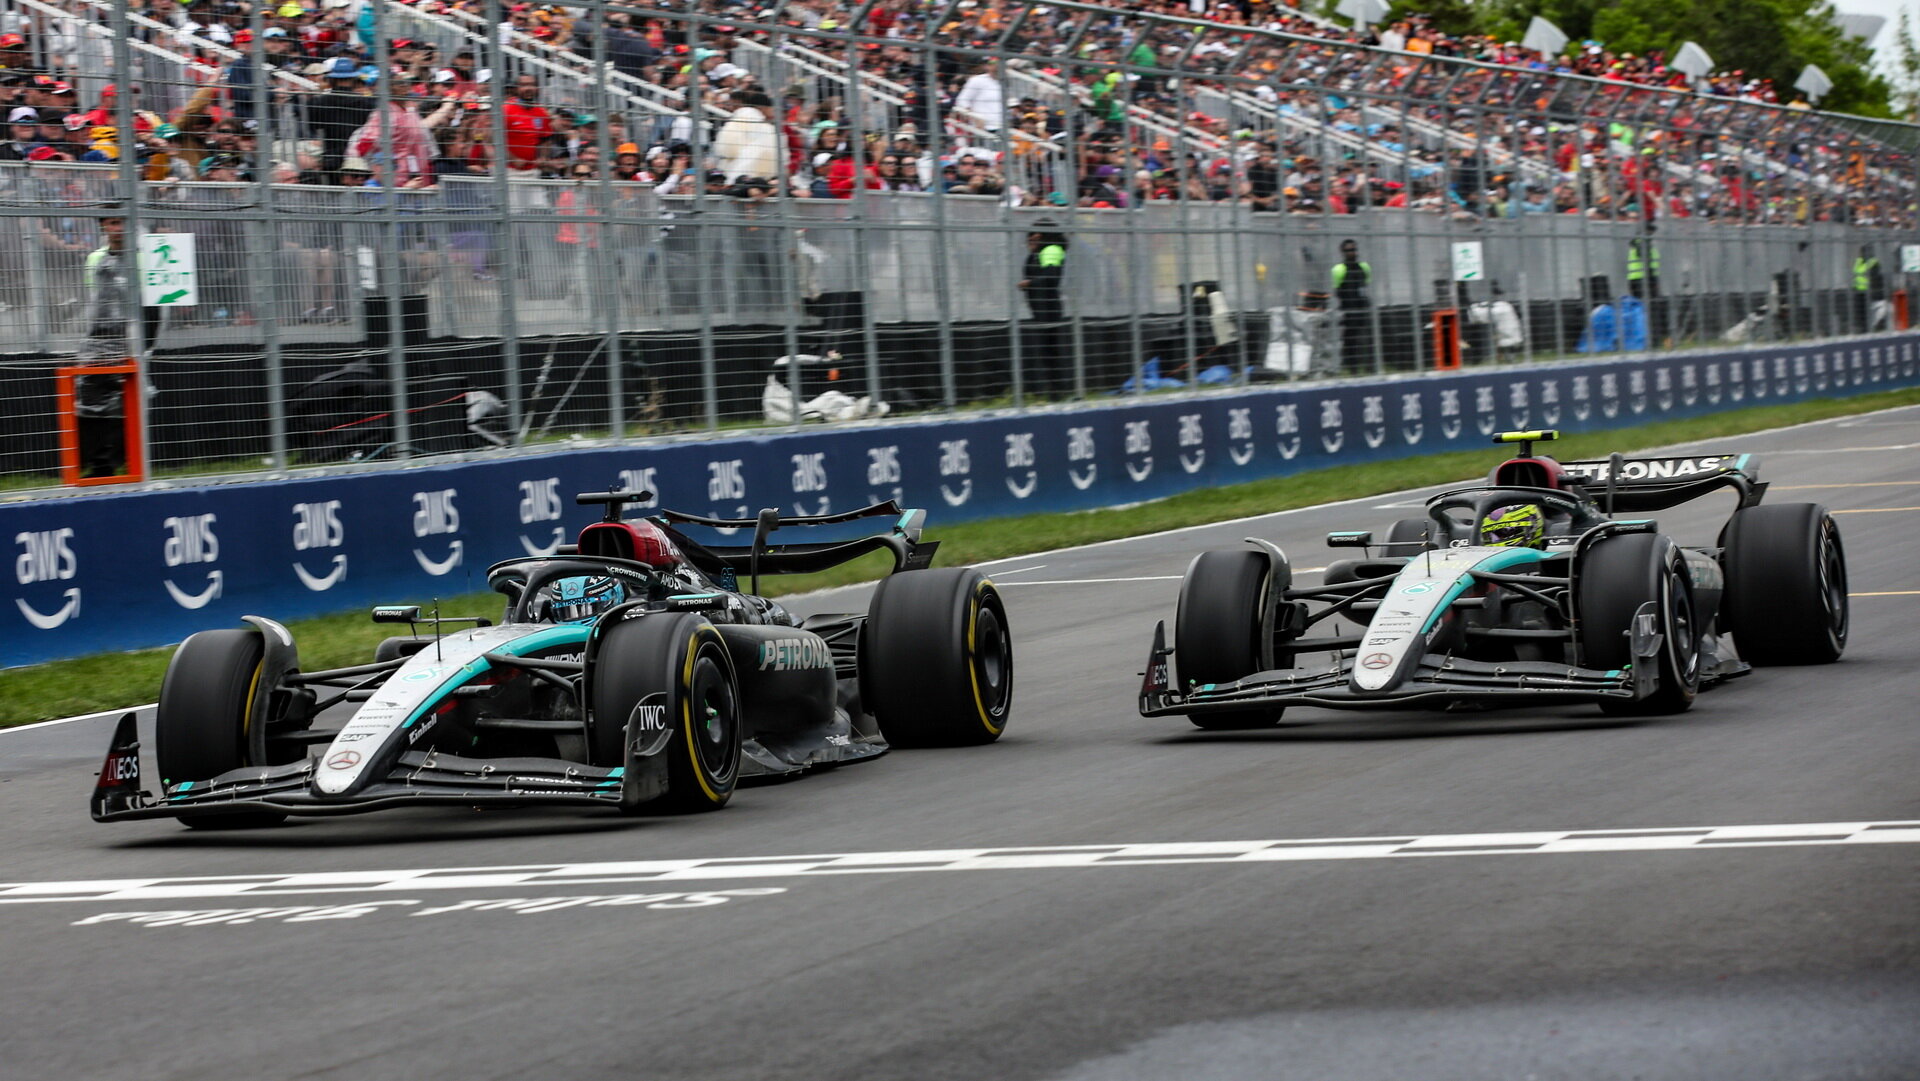 Mercedes dosáhl po nasazení nového předního křídla v posledních dvou závodech velkého pokroku